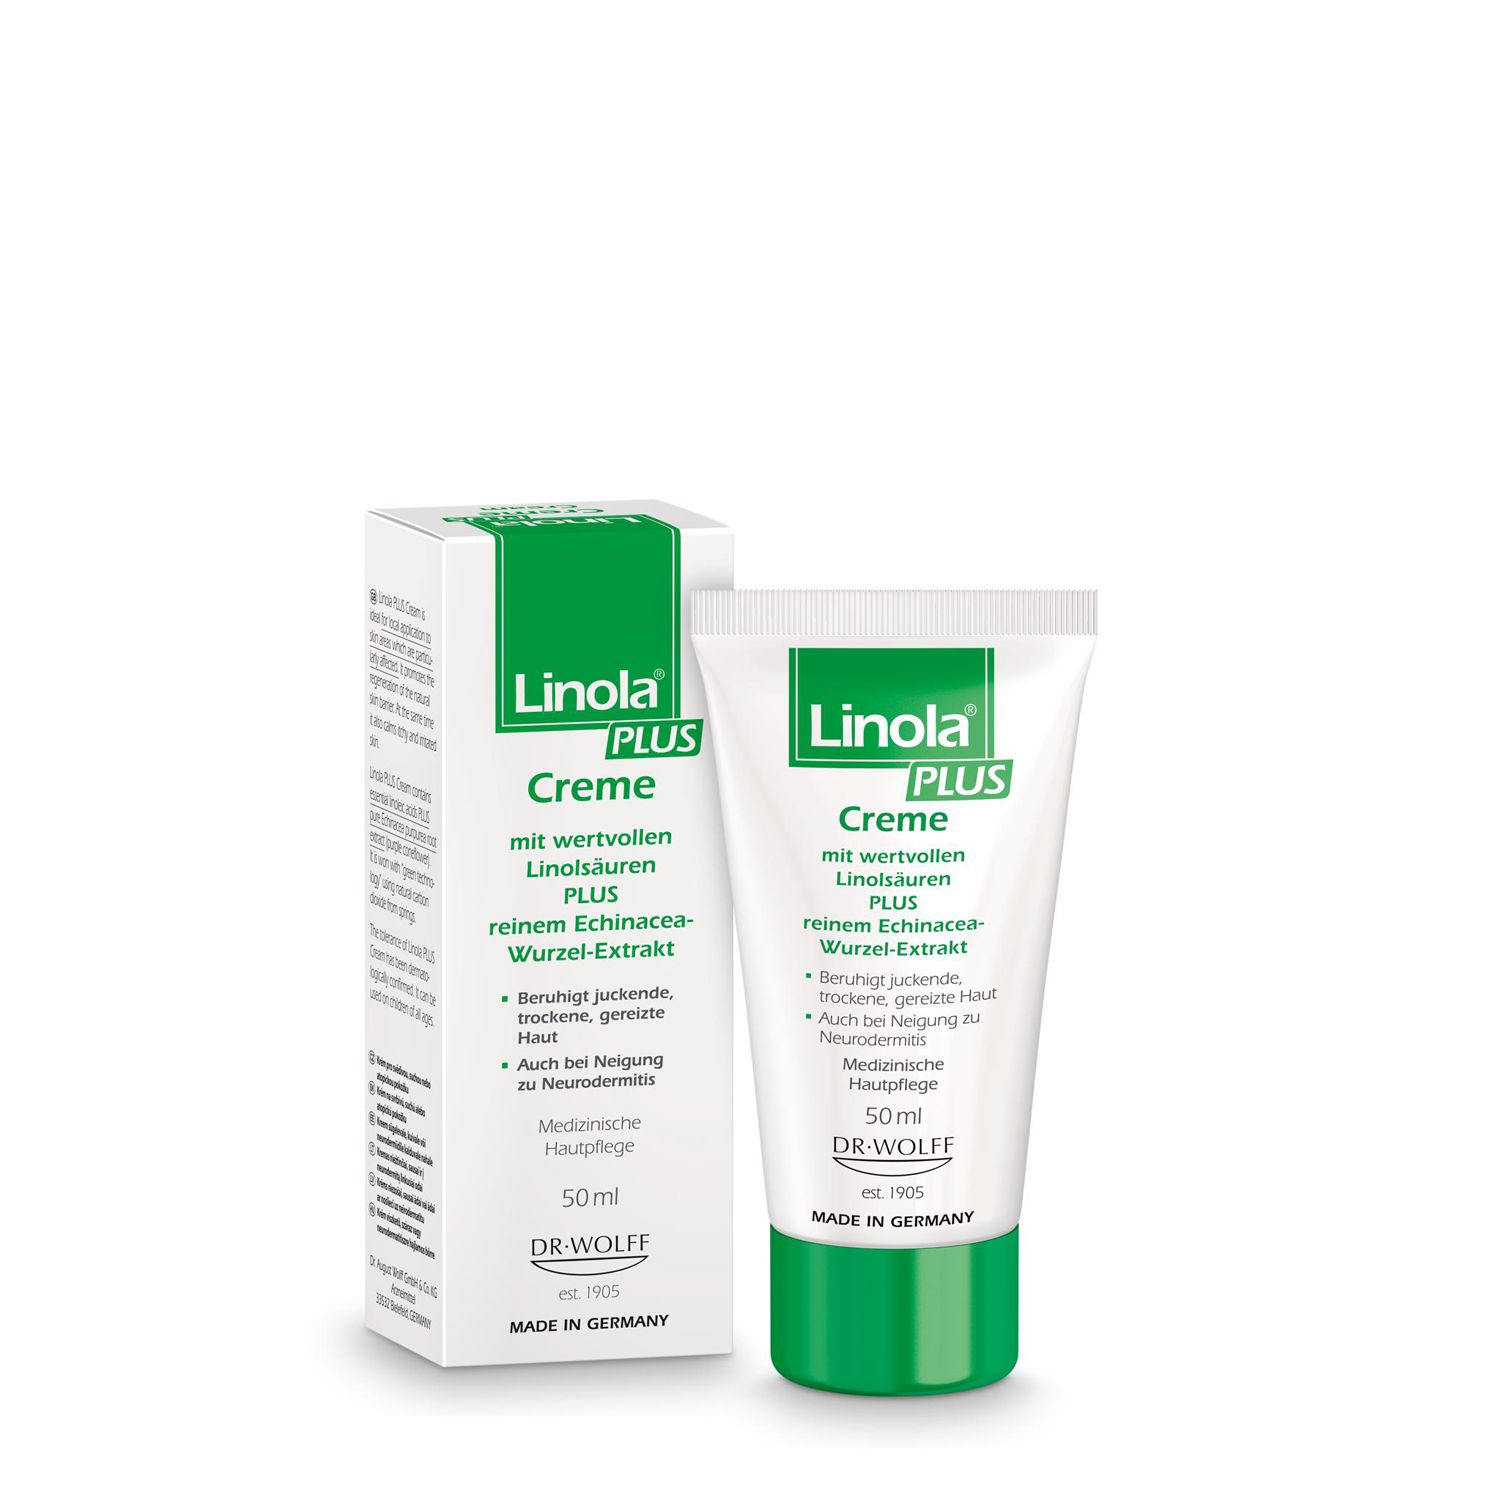 Linola PLUS Creme - Creme für juckende, trockene und irritierte Haut